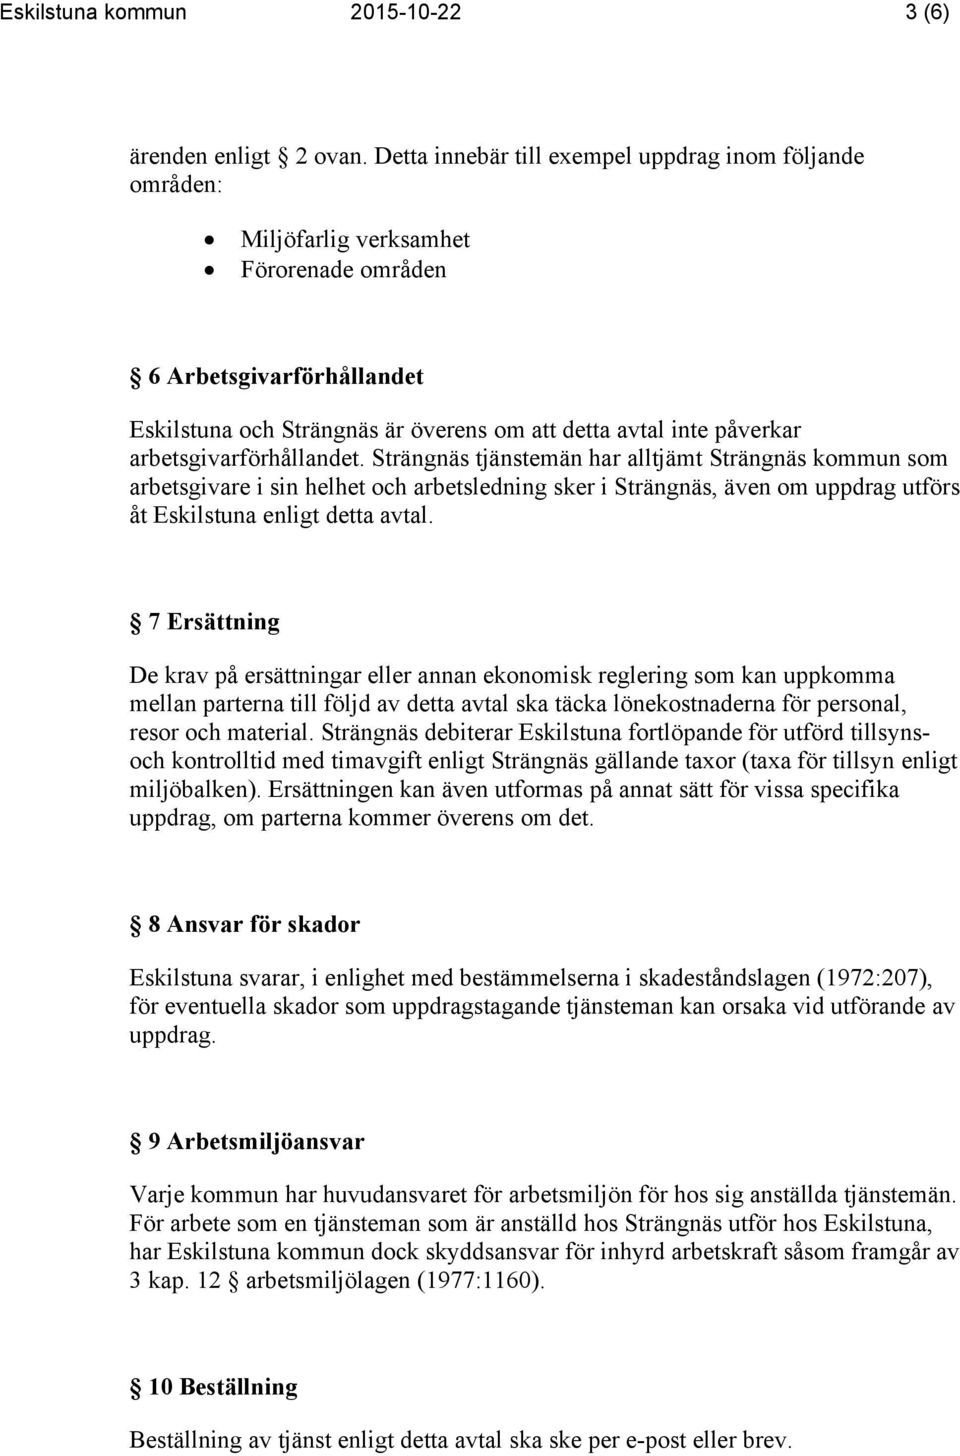 arbetsgivarförhållandet. Strängnäs tjänstemän har alltjämt Strängnäs kommun som arbetsgivare i sin helhet och arbetsledning sker i Strängnäs, även om uppdrag utförs åt Eskilstuna enligt detta avtal.